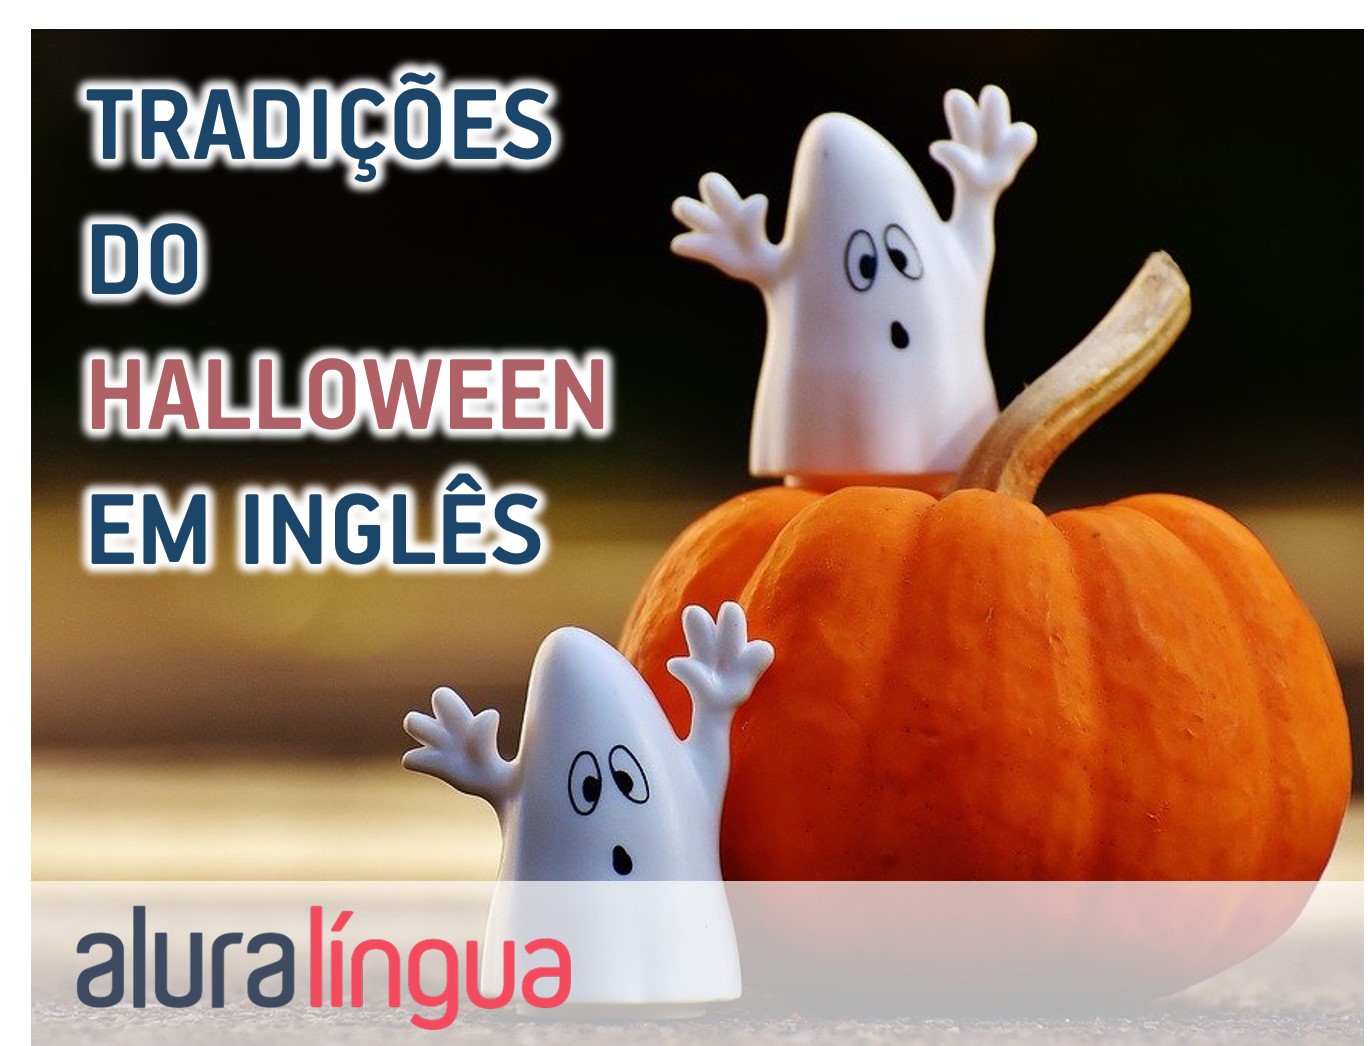 Quais são as expressões em inglês mais usadas no Halloween? - Quora